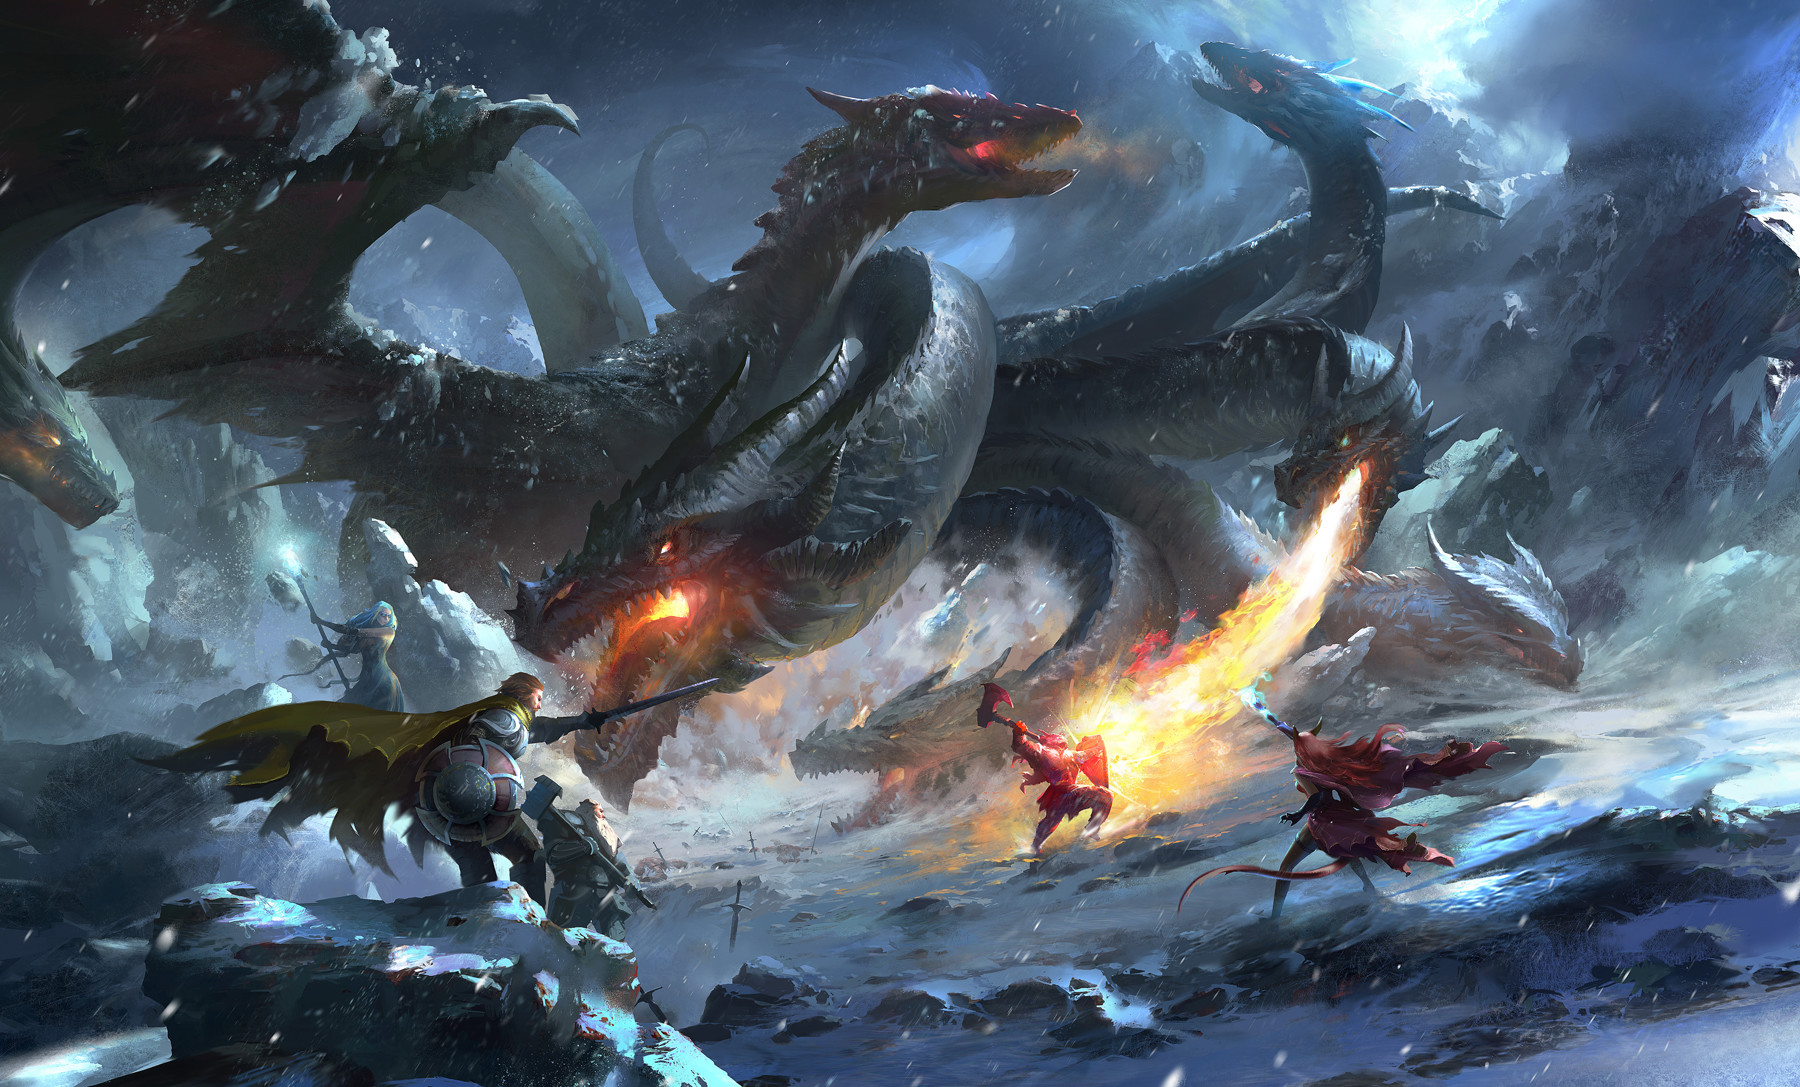 General 1800x1087 artwork fantasy art Dungeons & Dragons sorceress warrior dwarf dragon shield digital art hydra pointy teeth fire snowing snow